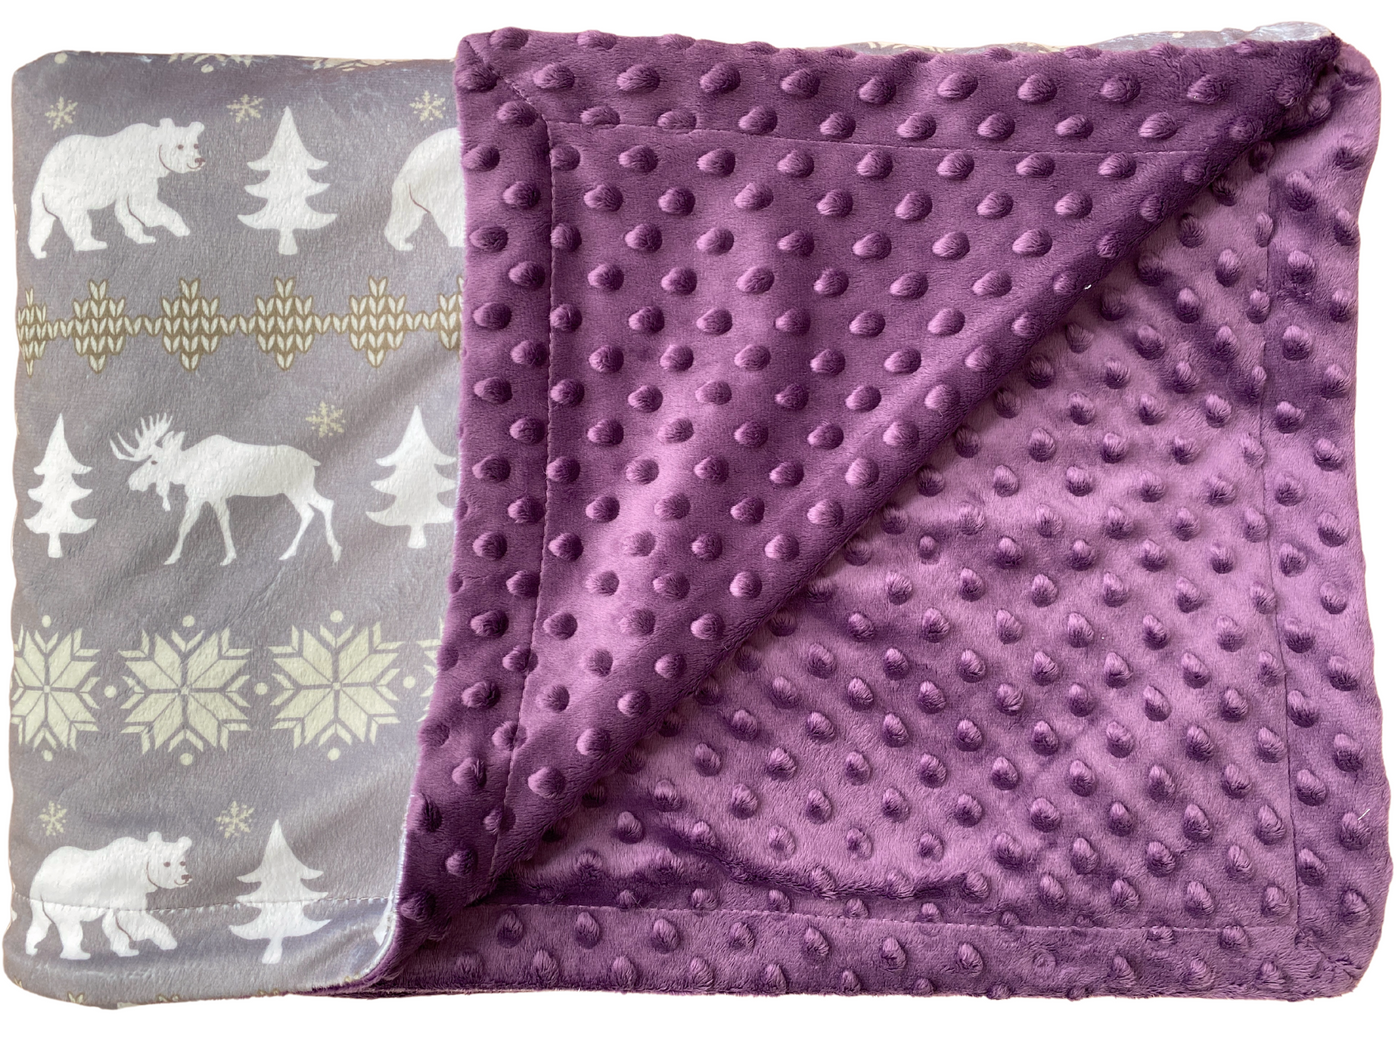 Giant Blanket: Comforting Scandinavian Tender Purple